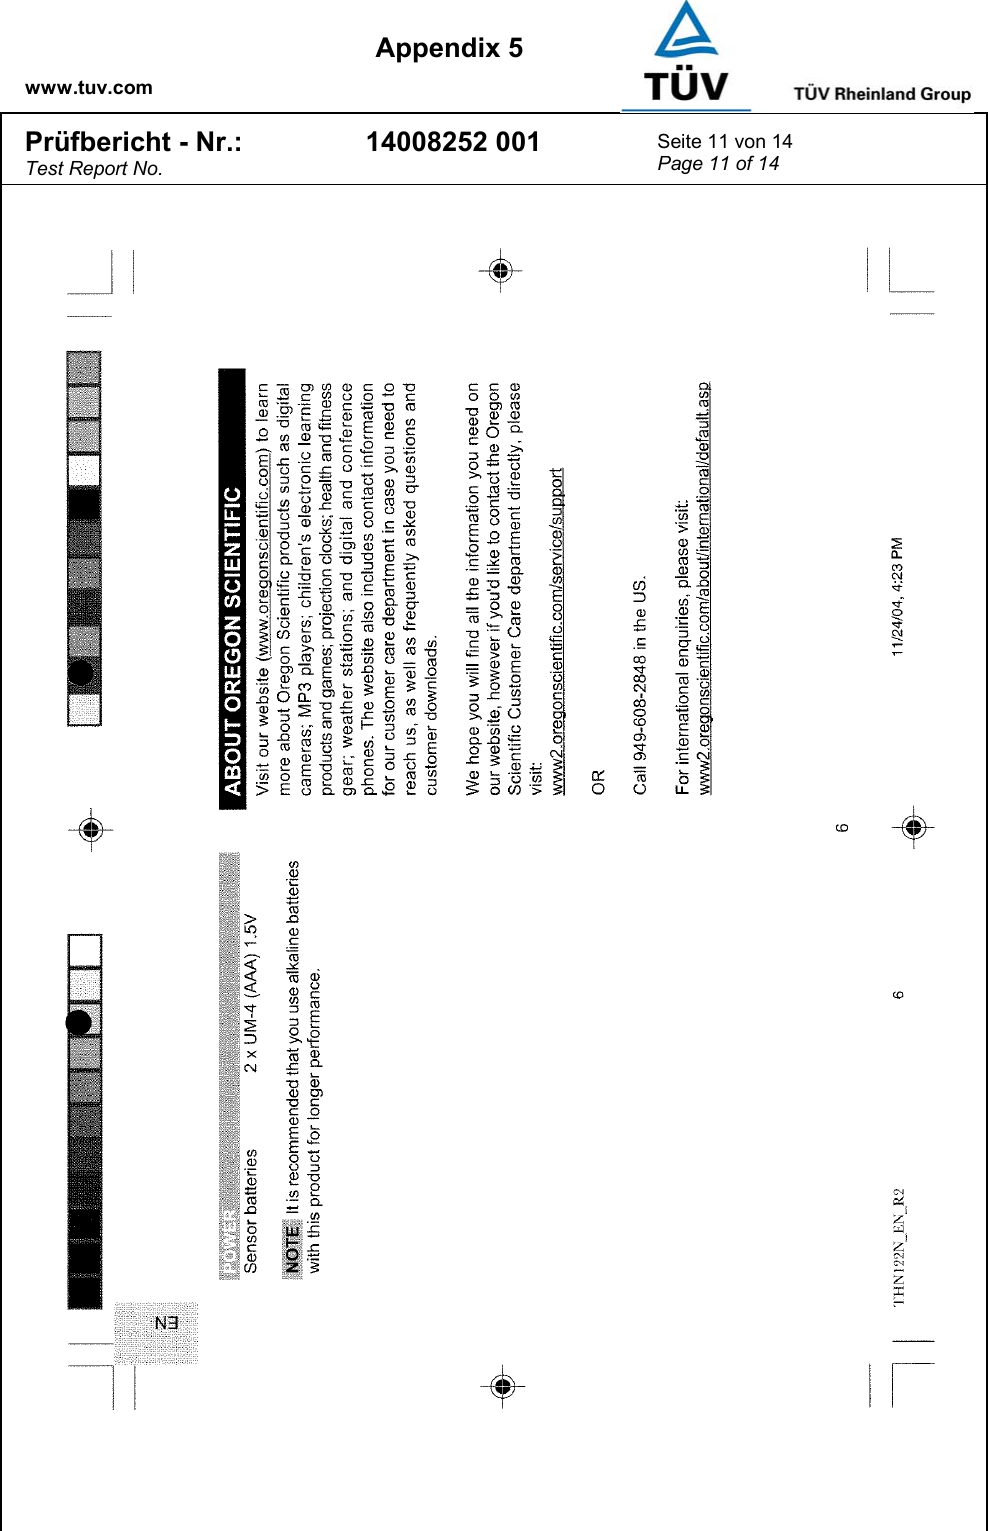    www.tuv.com  Appendix 5 Prüfbericht - Nr.: Test Report No. 14008252 001  Seite 11 von 14 Page 11 of 14   